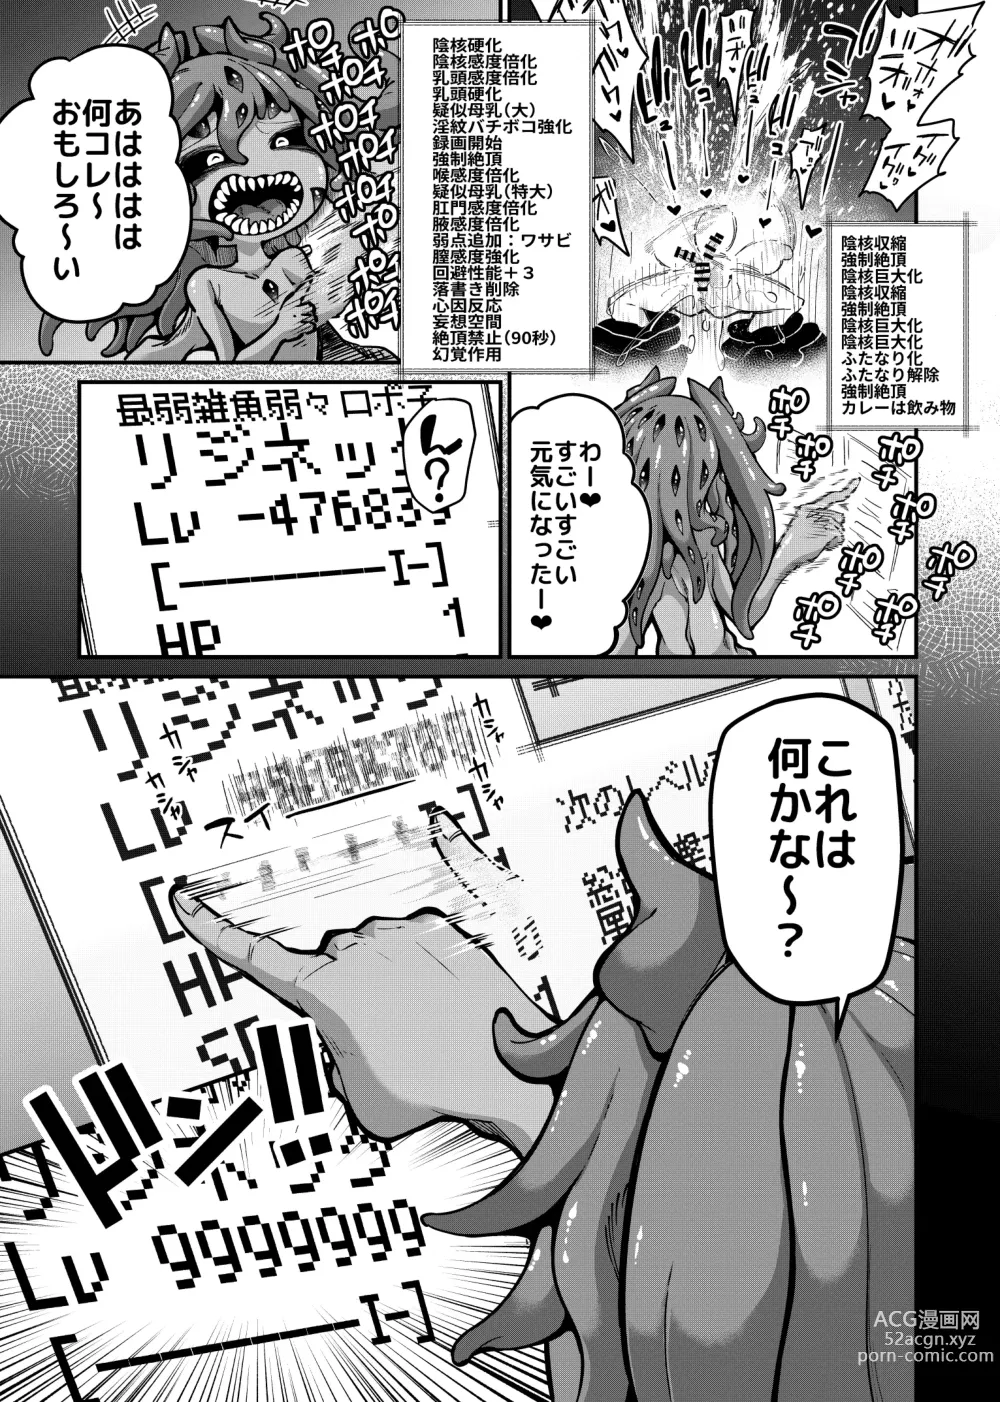 Page 8 of doujinshi Rizinetta VS jishin dungeon 2